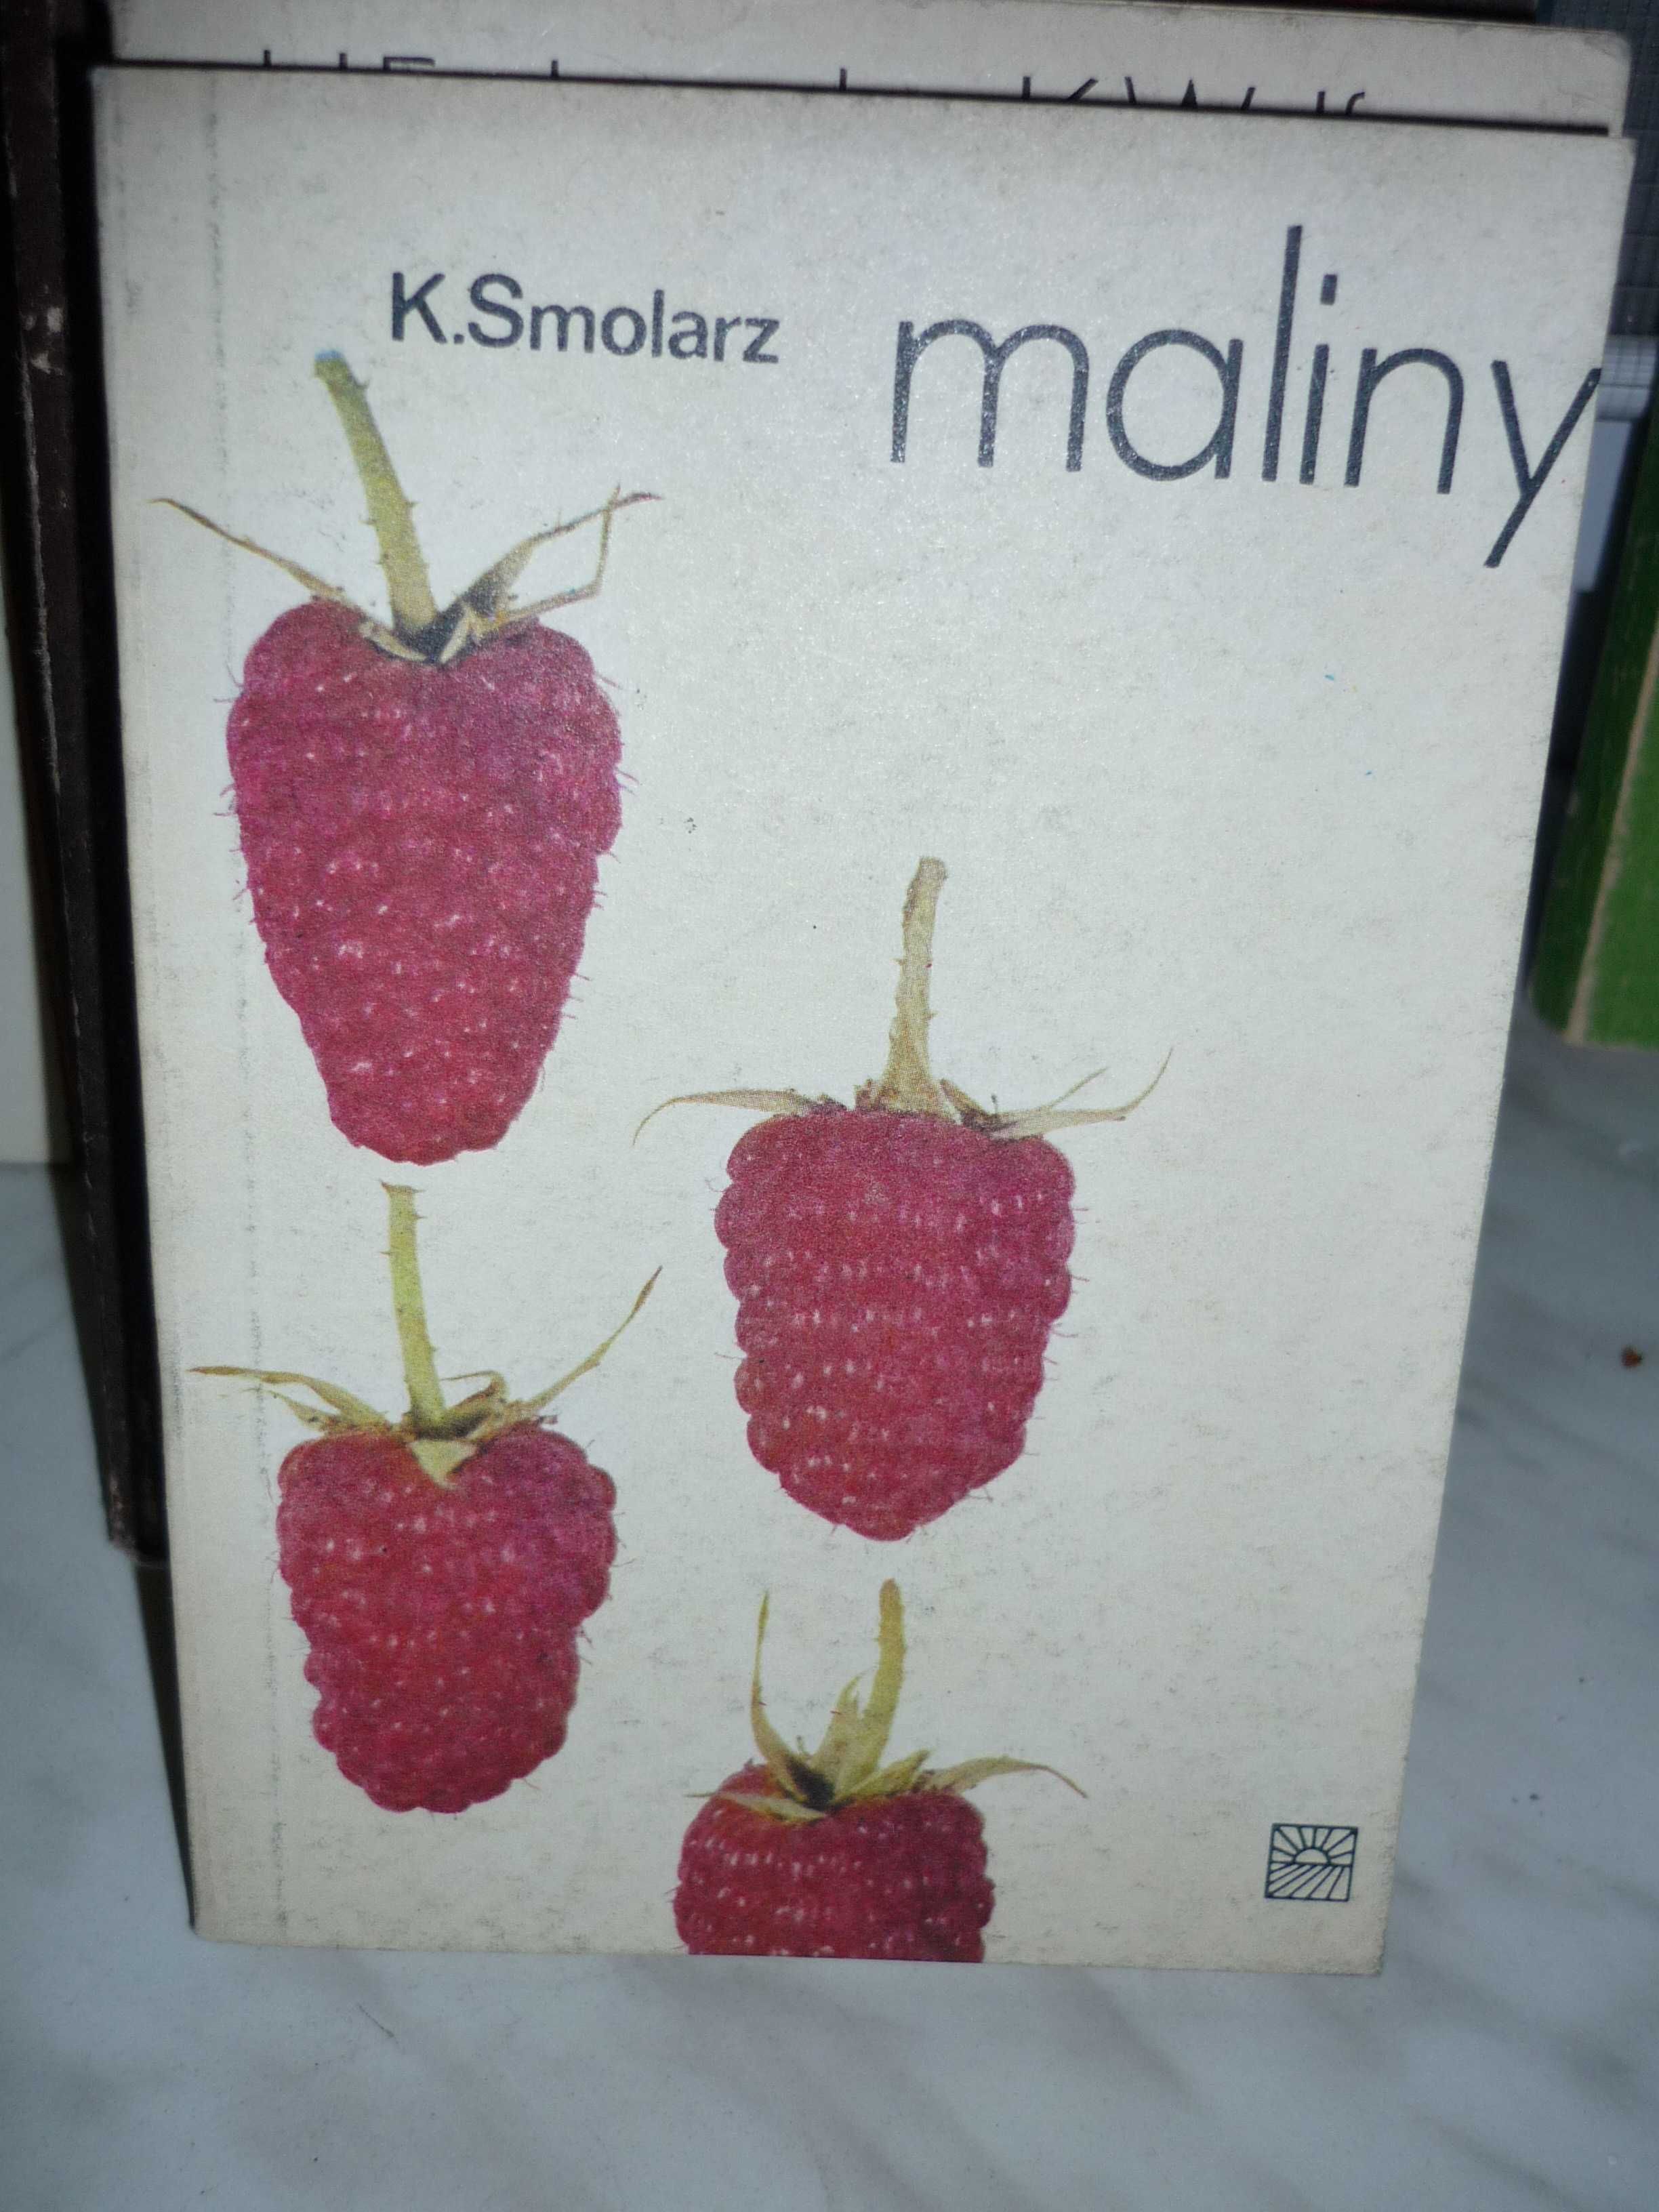 Maliny , Kazimierz Smolarz .